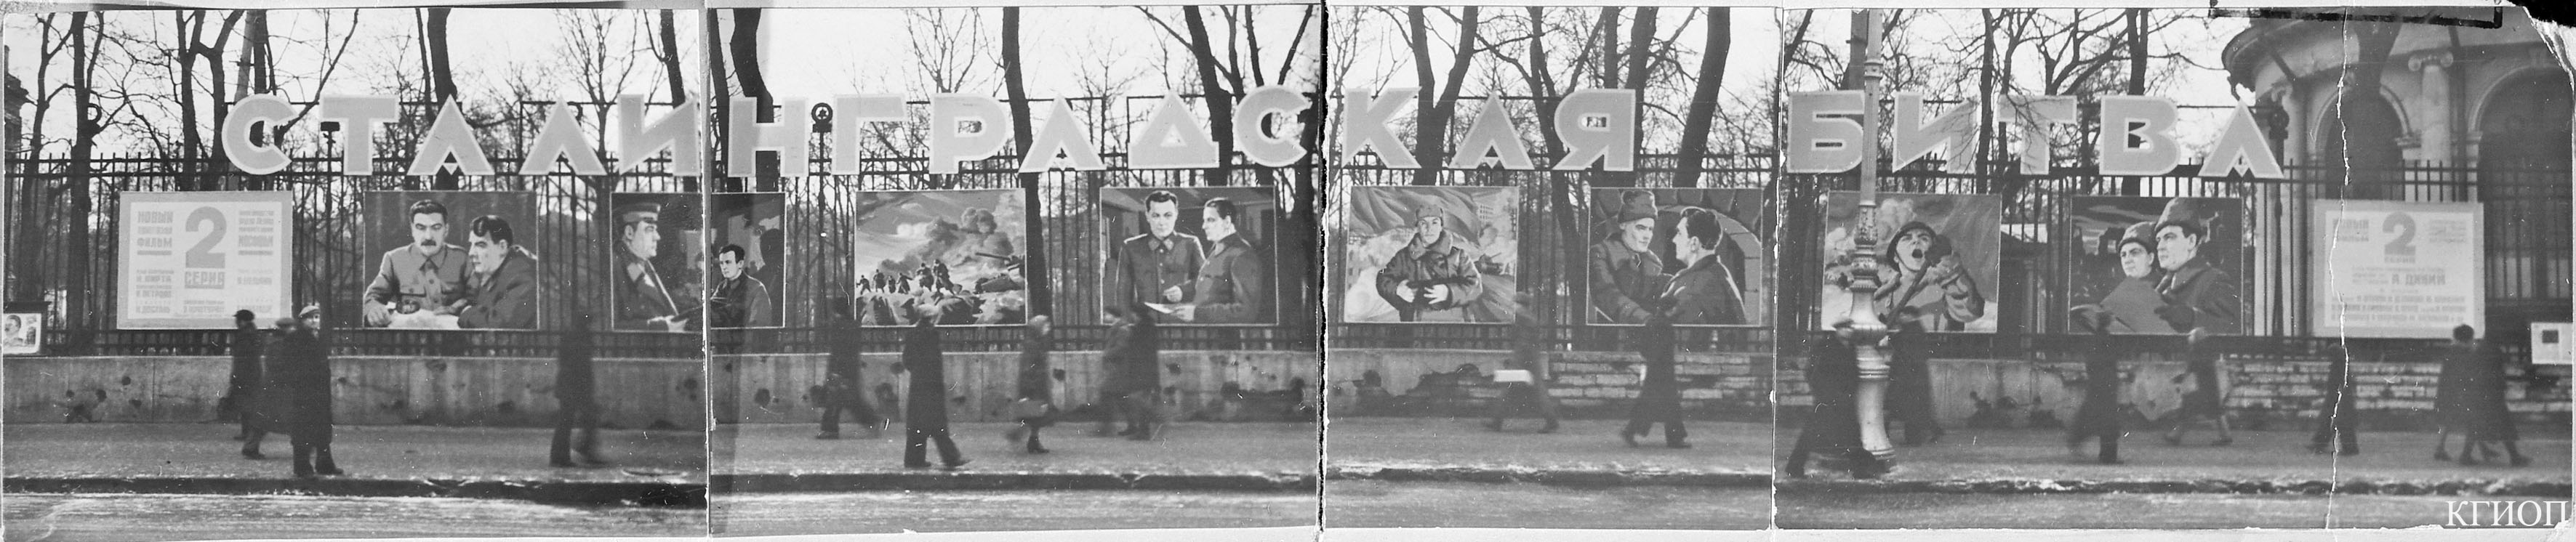 1949. Афиша 2-й серии художественного фильма «Сталинградская битва» на ограде Аничкова дворца